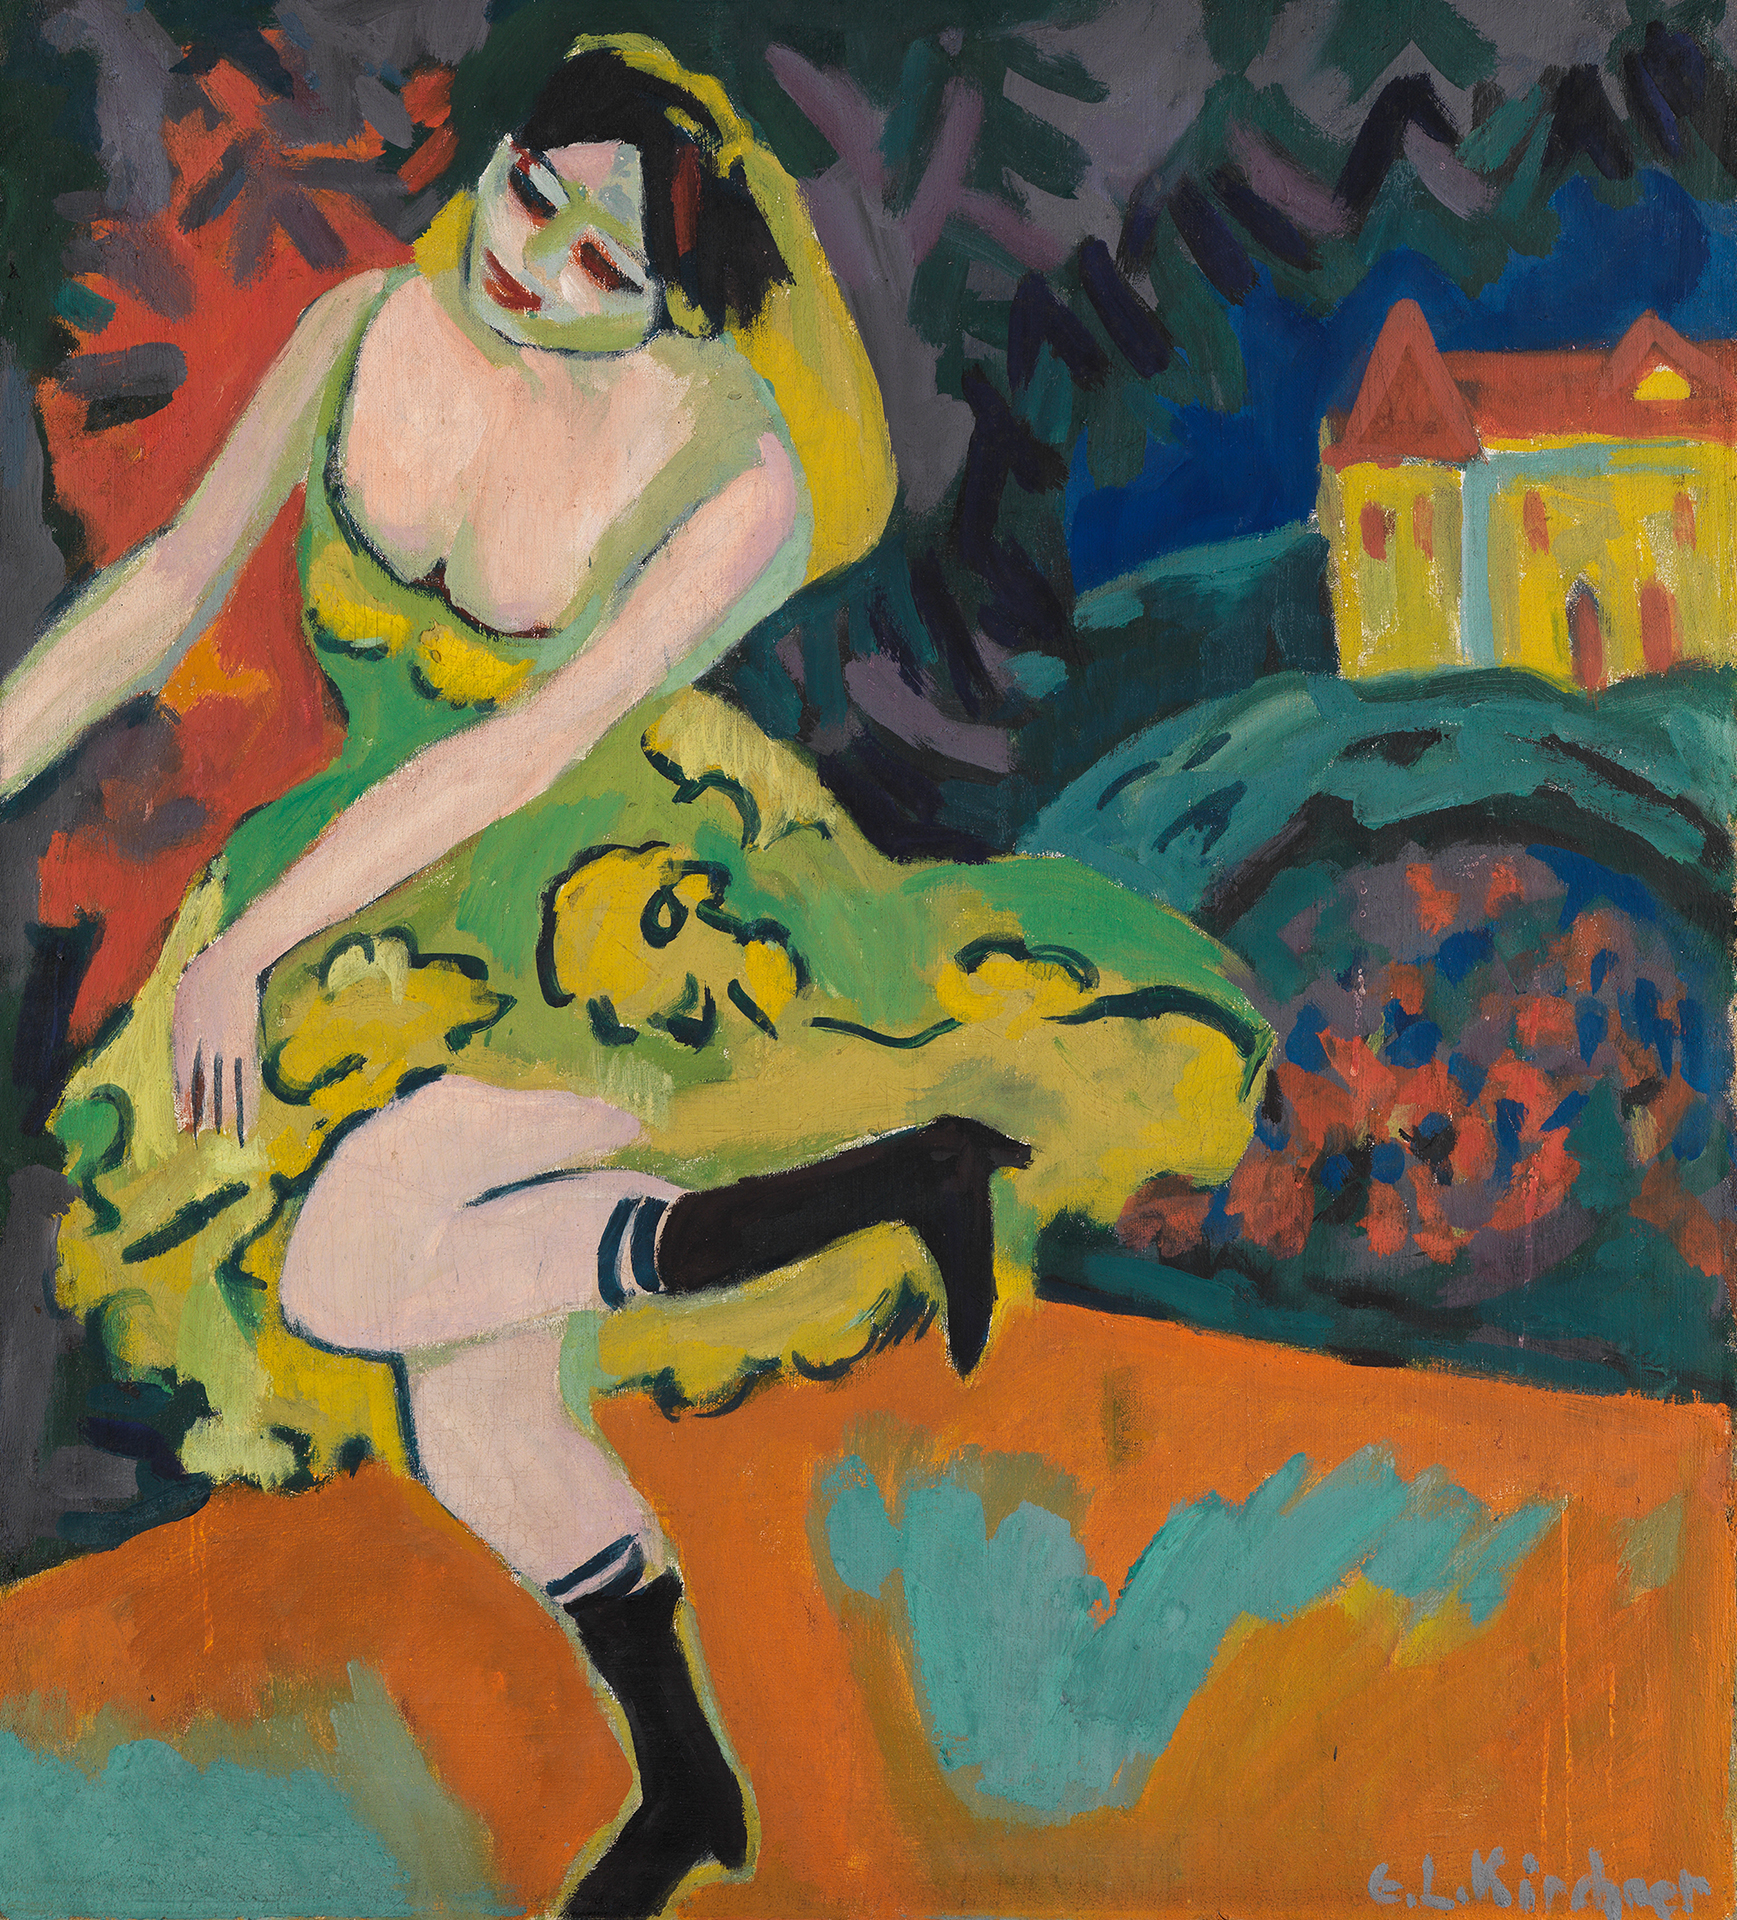 Abbildung eines Gemäldes von Ernst Ludwig Kirchner, das eine Variététänzerin in bunten Farben zeigt.